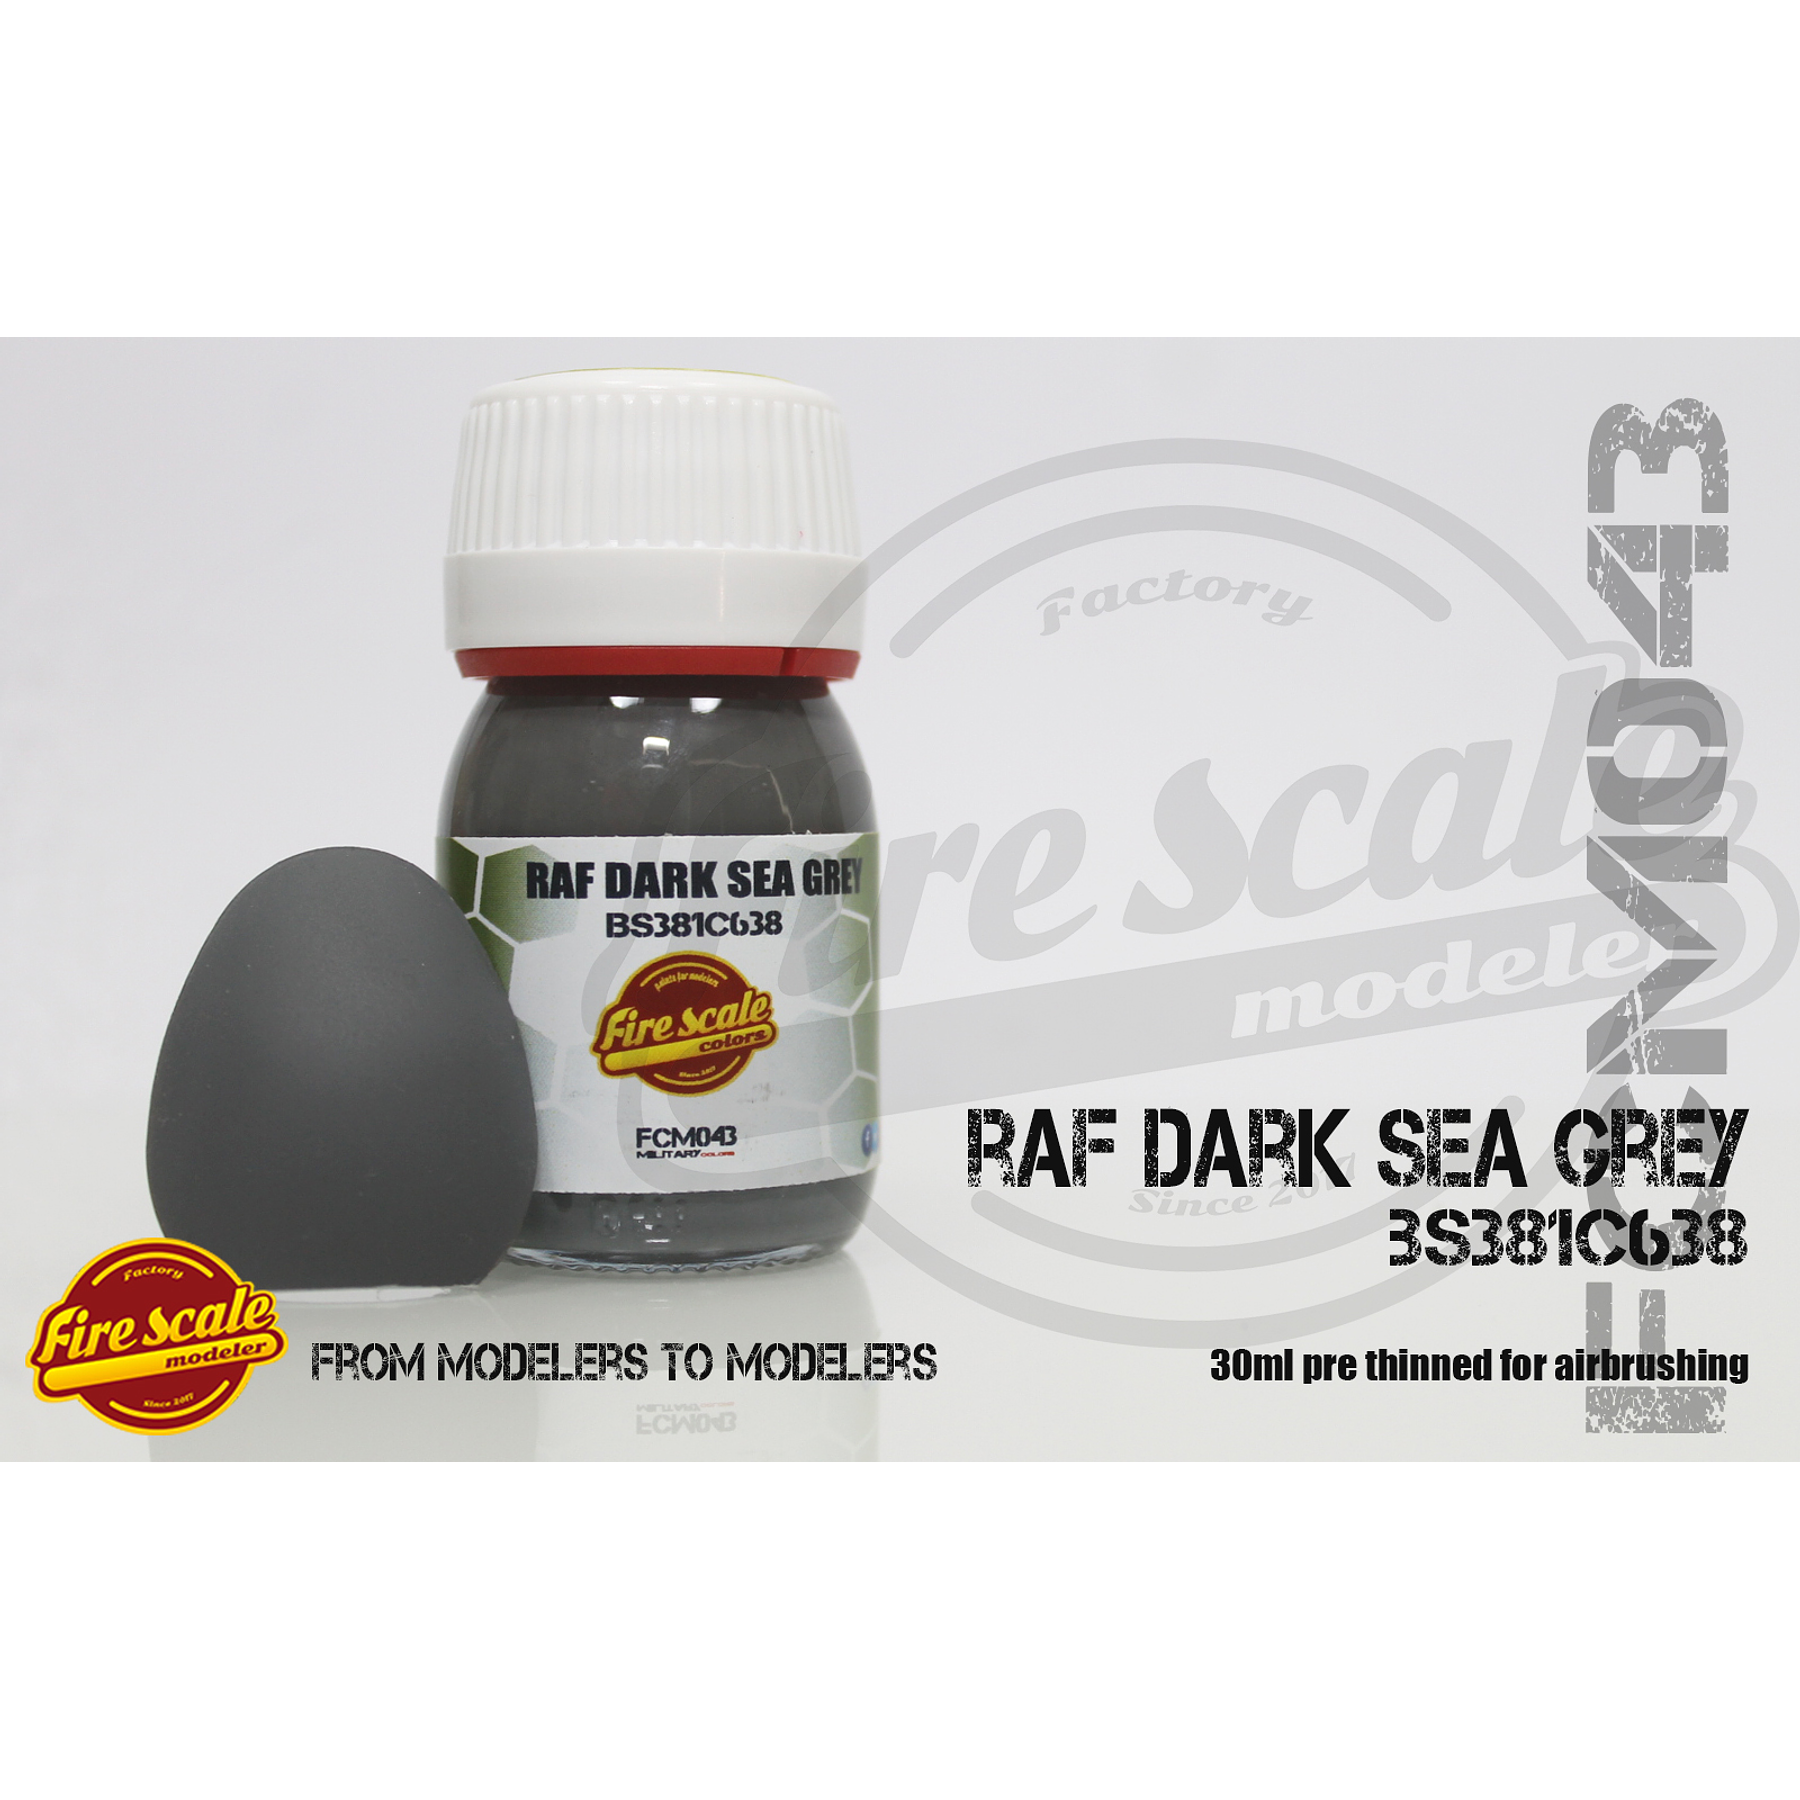  Raf Dark Sea Grey